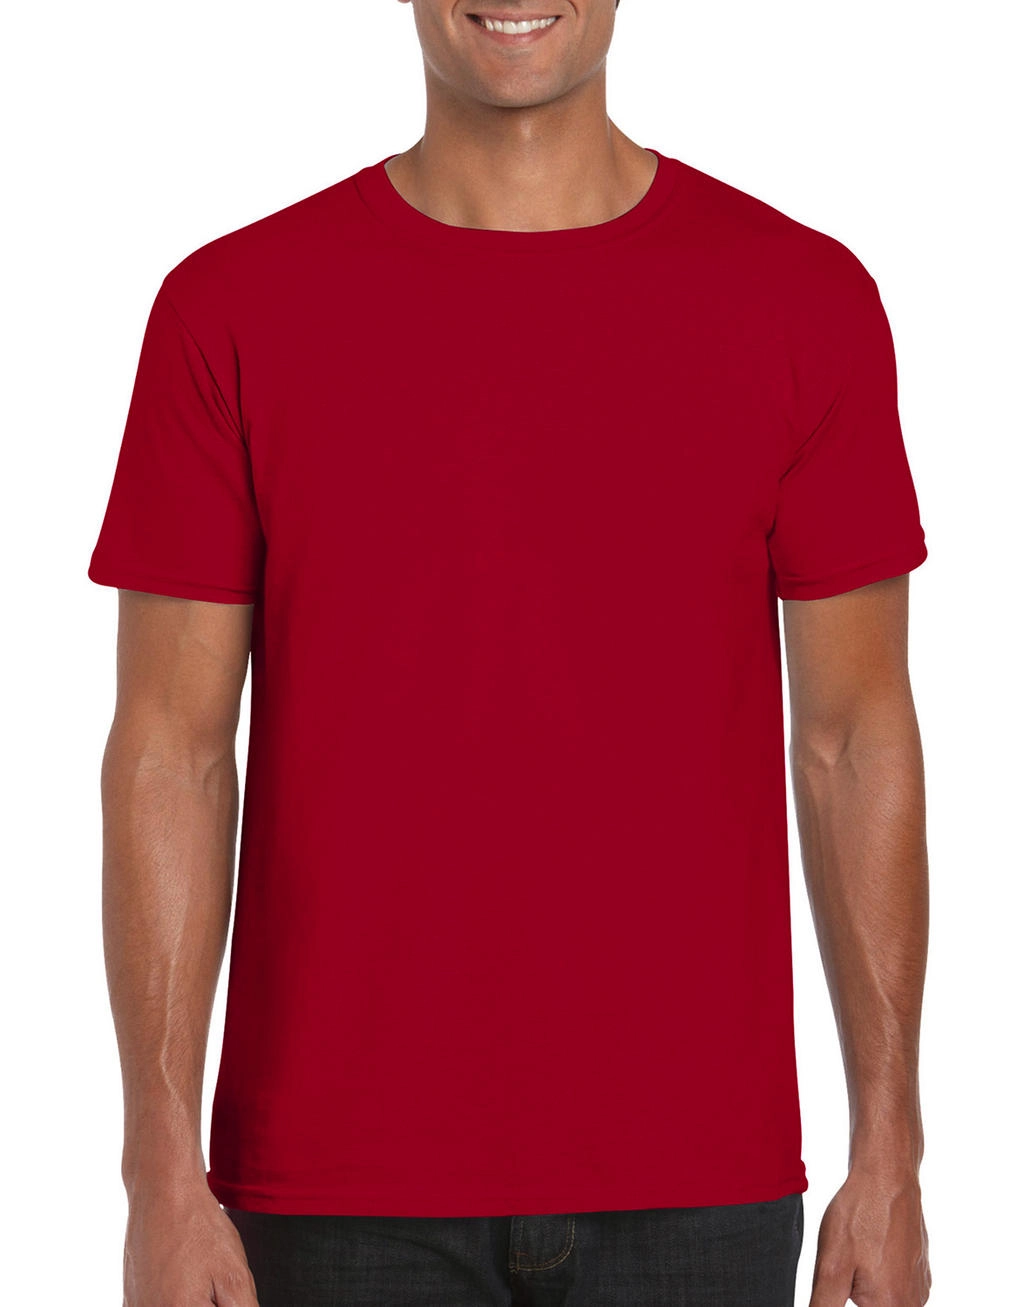 Softstyle® Ring Spun T-Shirt zum Besticken und Bedrucken in der Farbe Cherry Red mit Ihren Logo, Schriftzug oder Motiv.